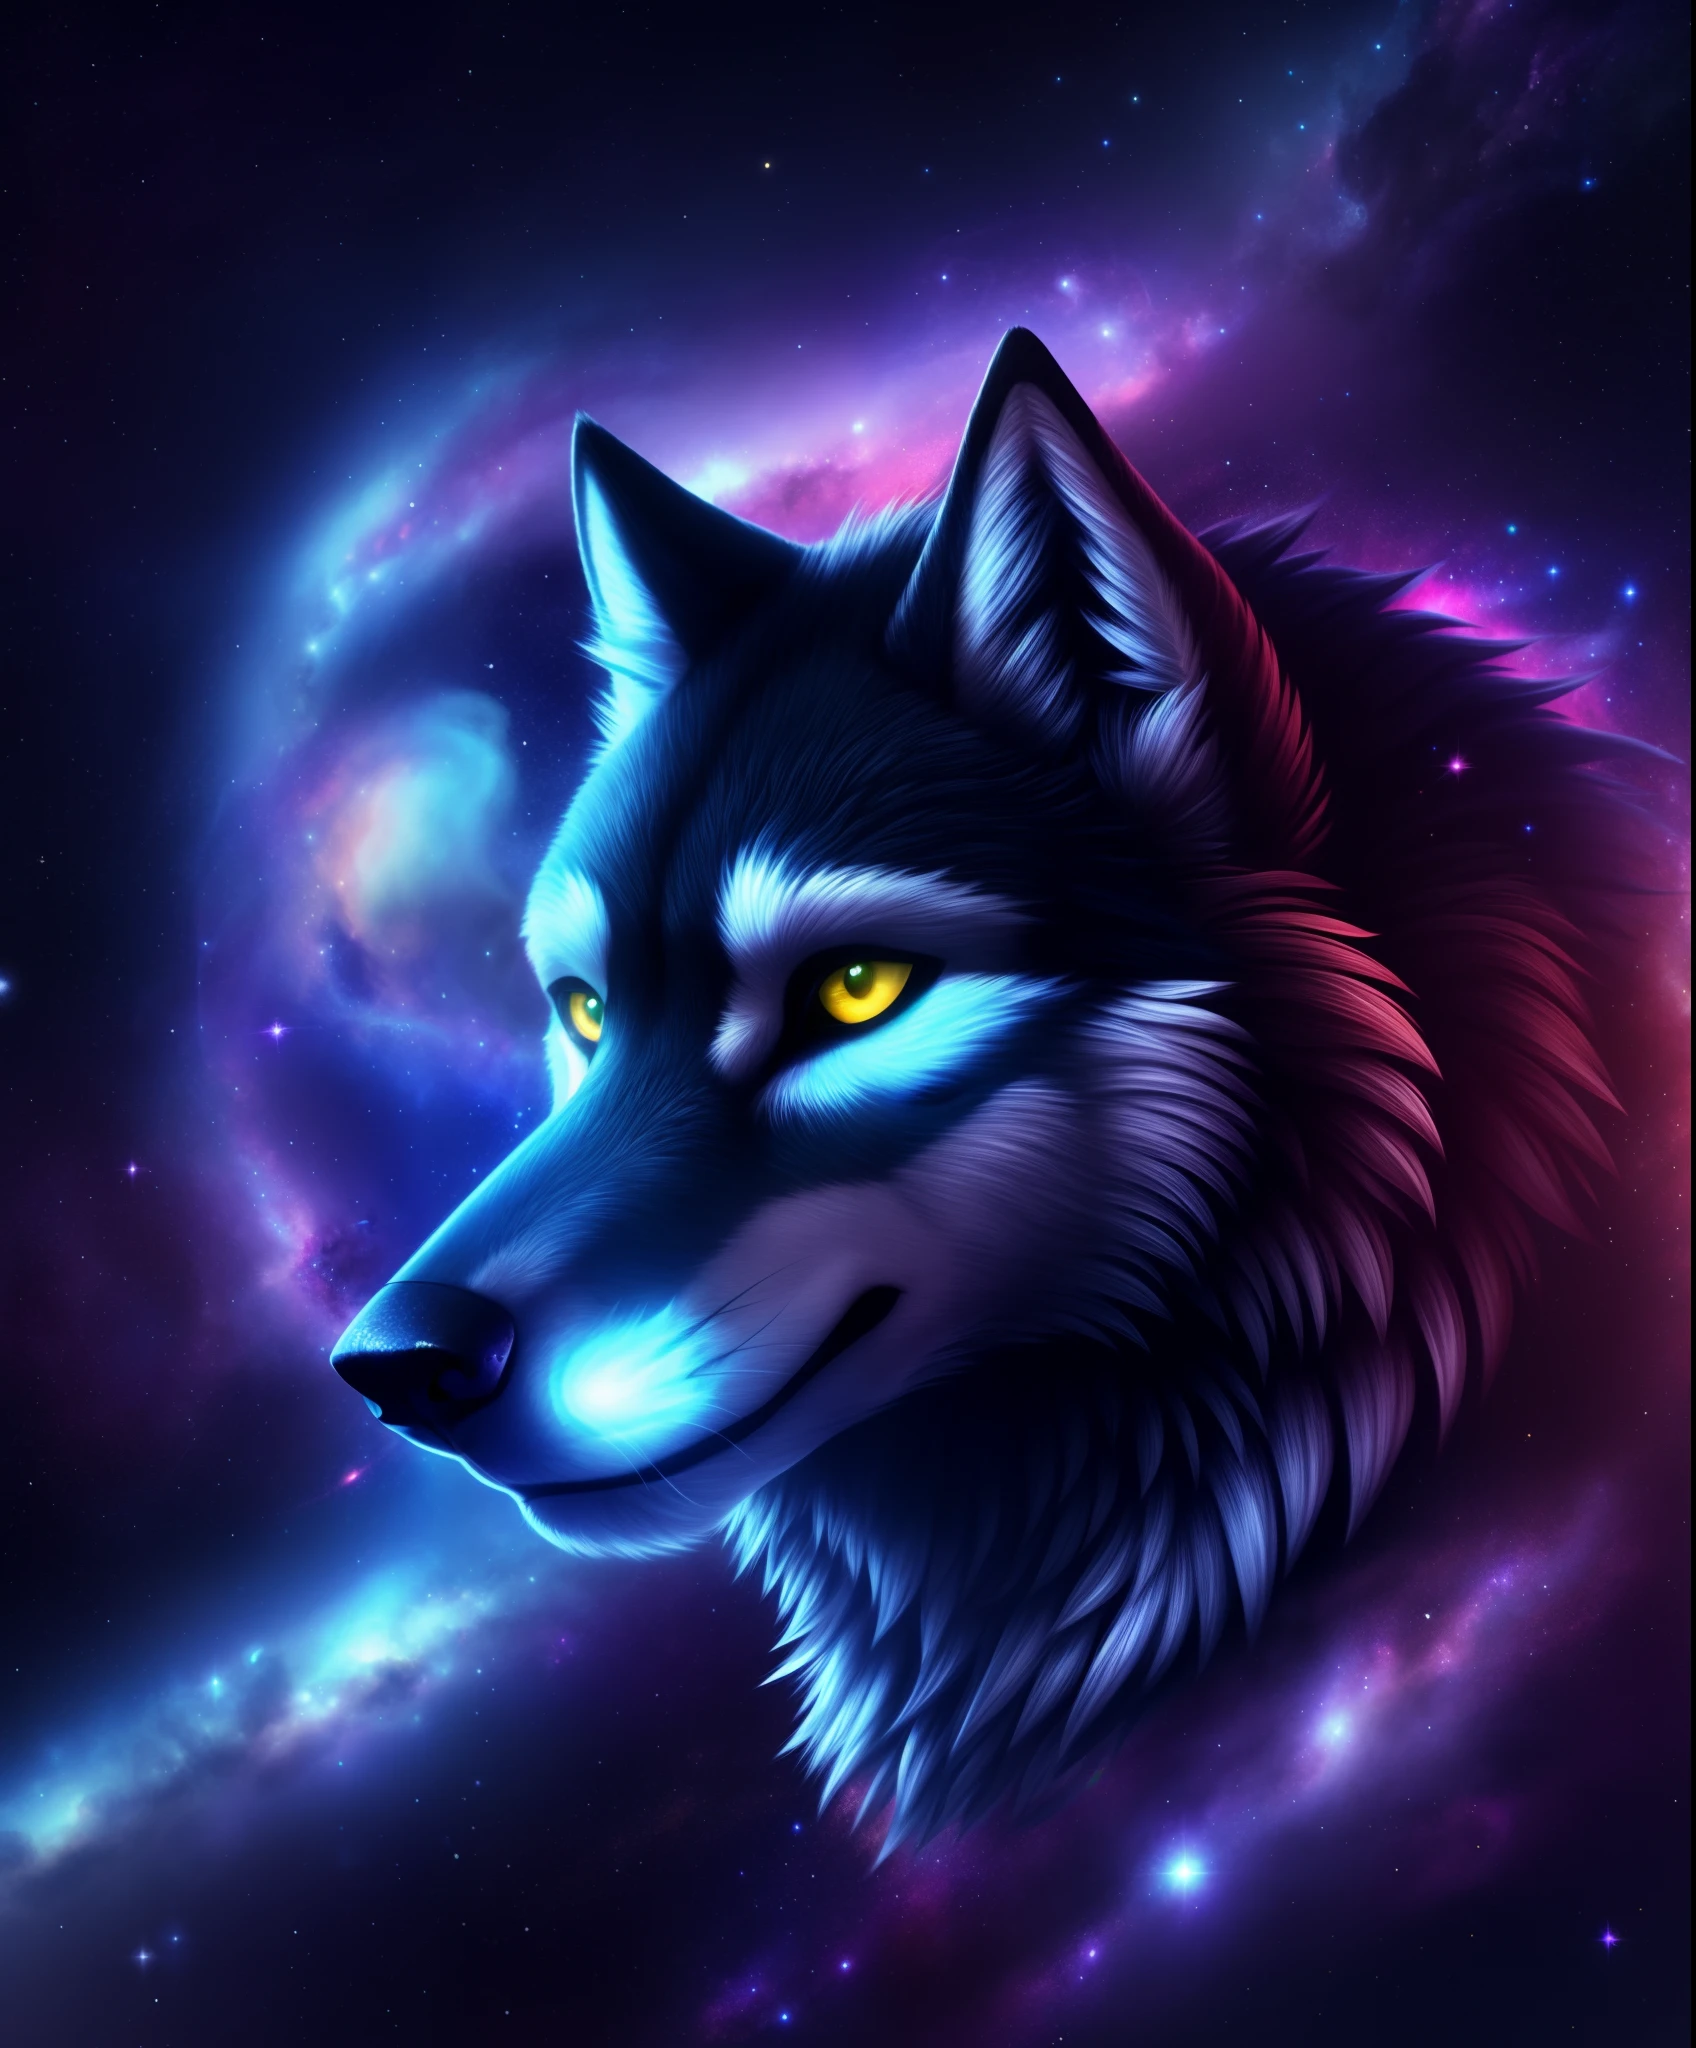 (wolf), Energie, galaxies, Spiralen, Raum, Nebel, Sterne, Rauch, irisierend, komplizierte Details, (in der Gestalt eines Wolfes), octane render, 8k